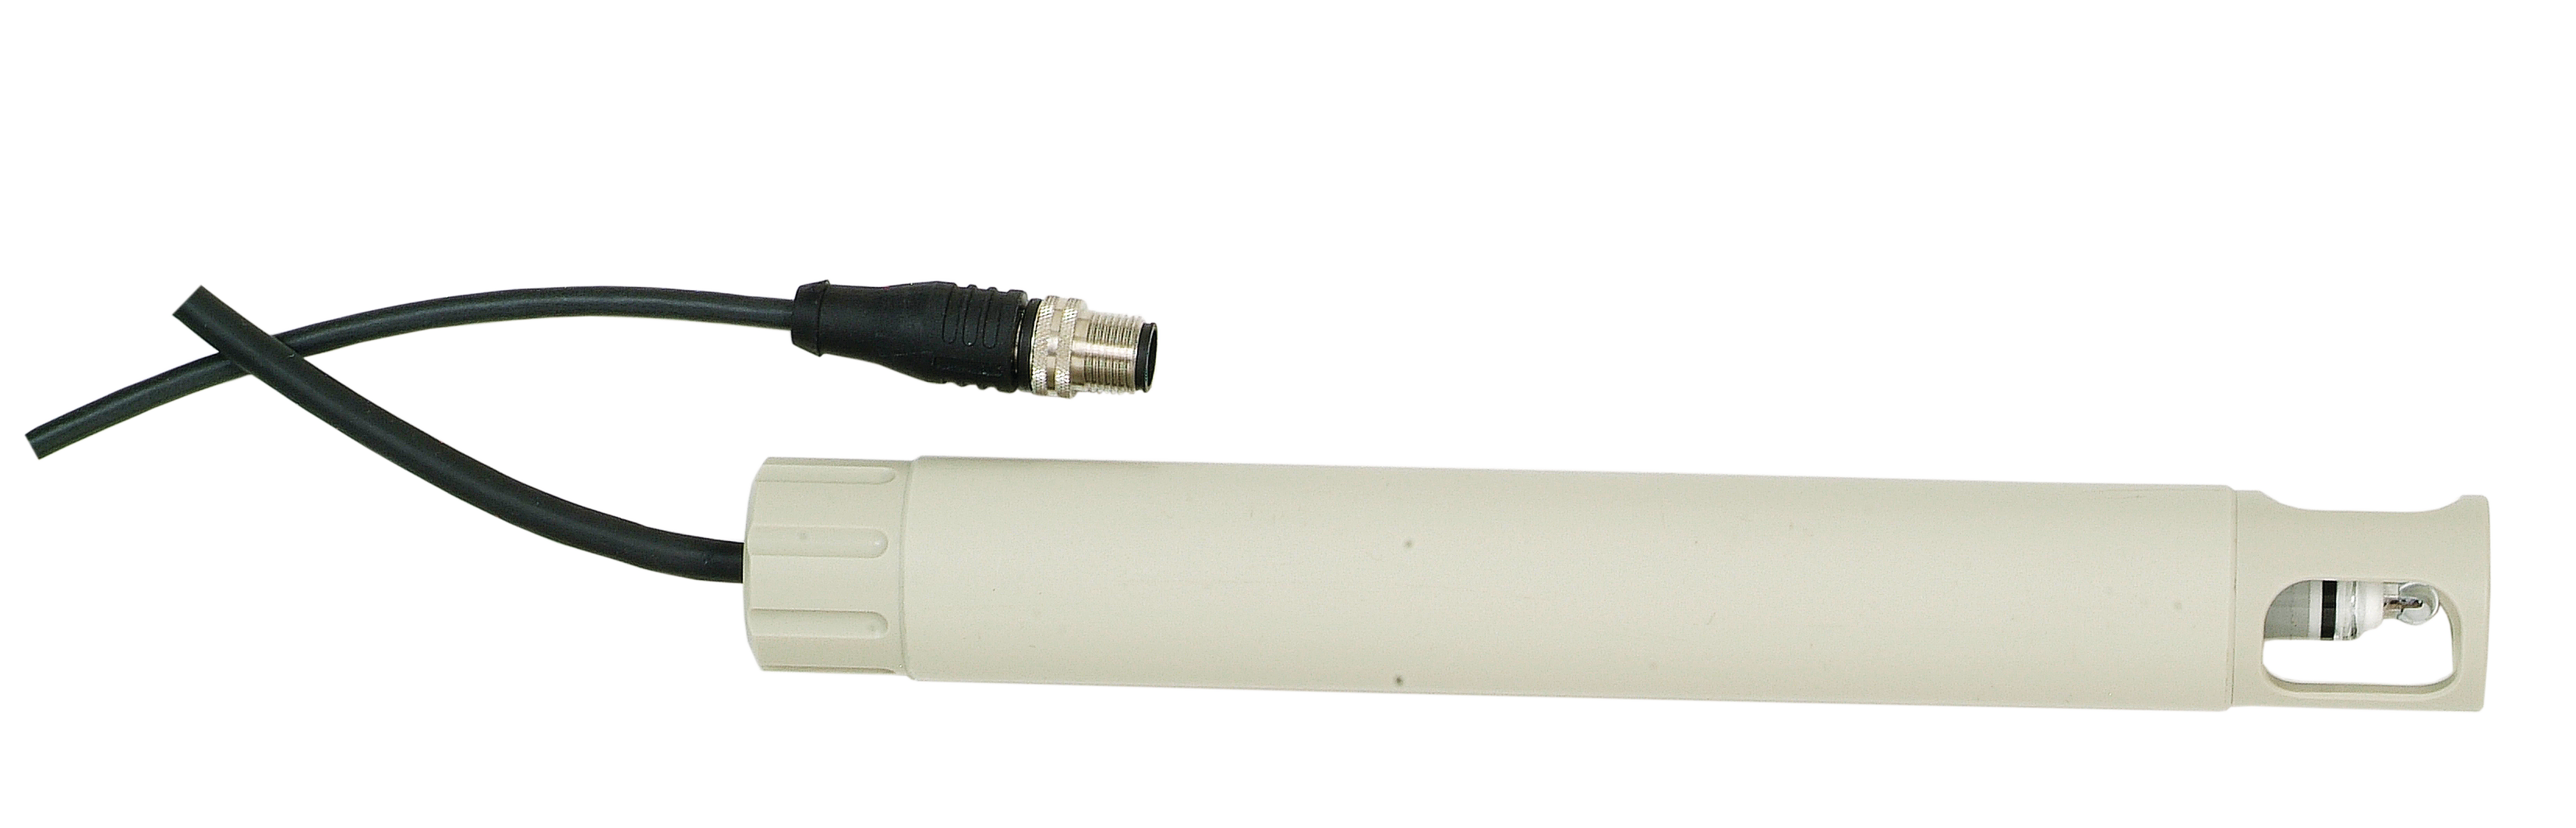 ARD 170 Untertaucharmatur mit Tauchgewicht | PP-H oder PP-elektrisch leitfähig | Zur Feldmessung mit Memosens-Sensoren